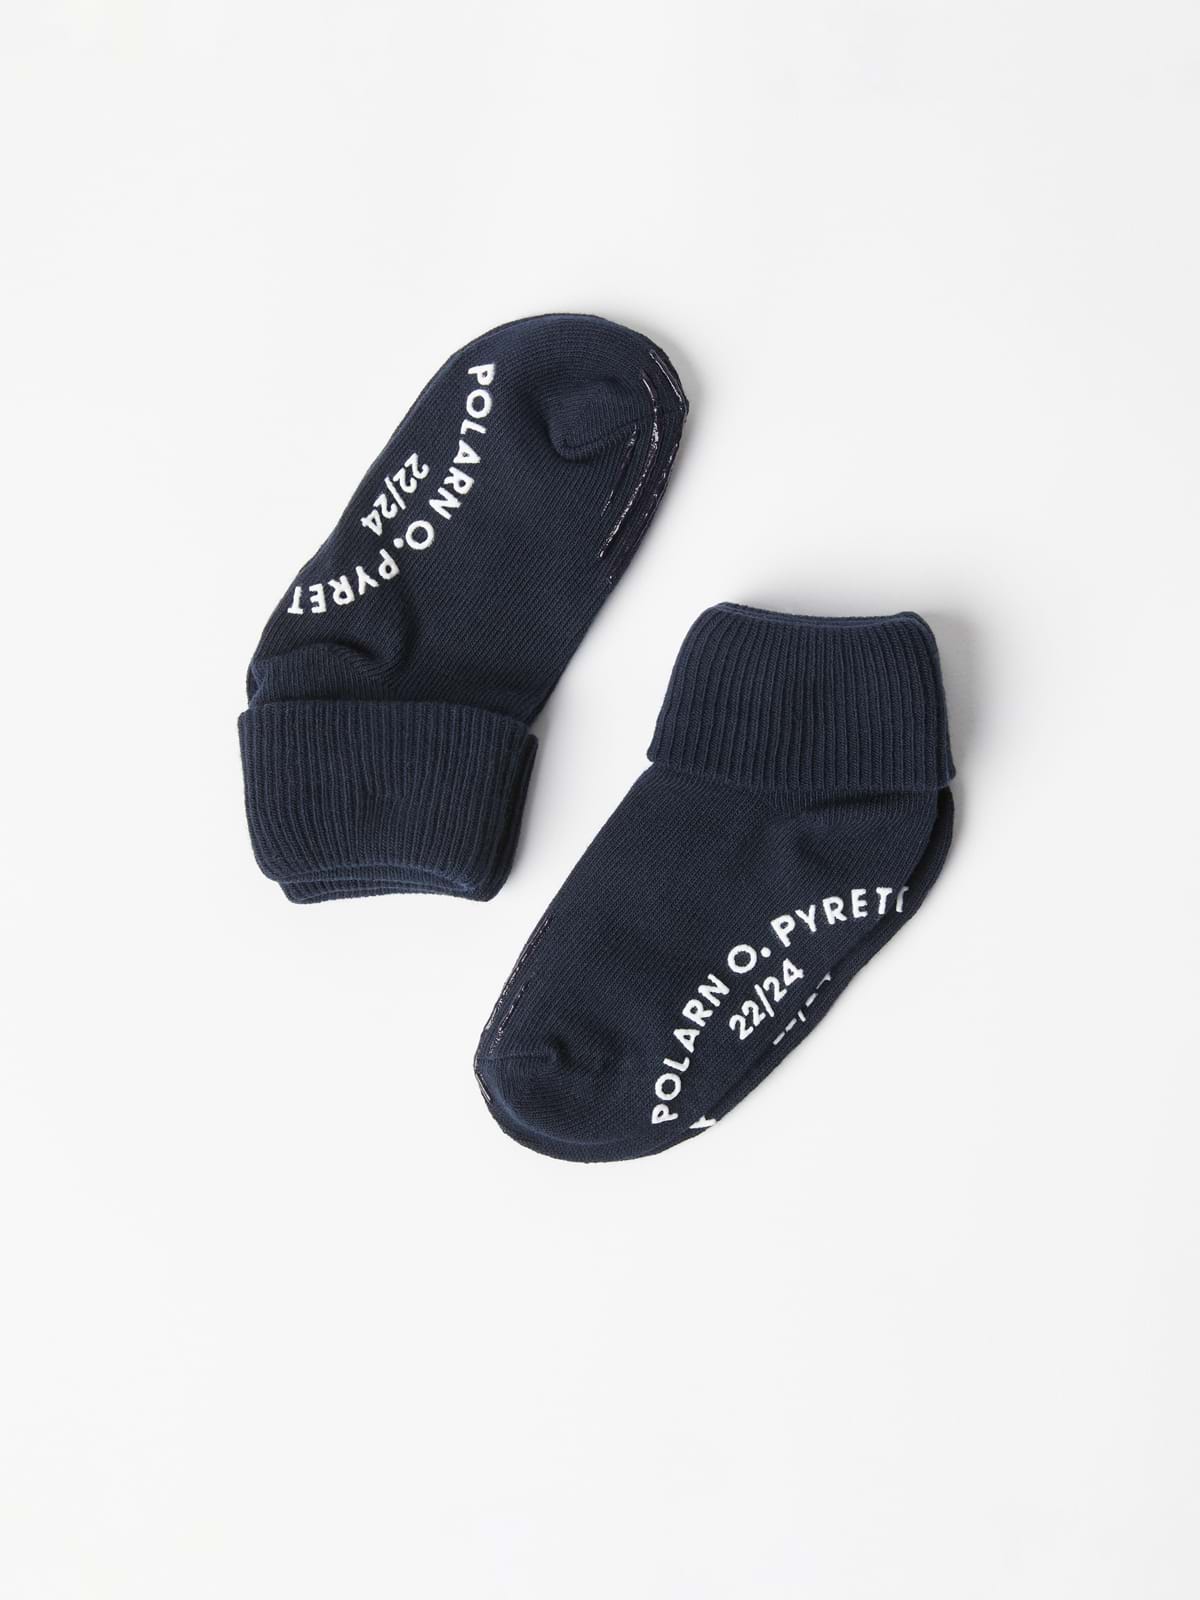 2 Pack Antislip Baby Crawler Socks